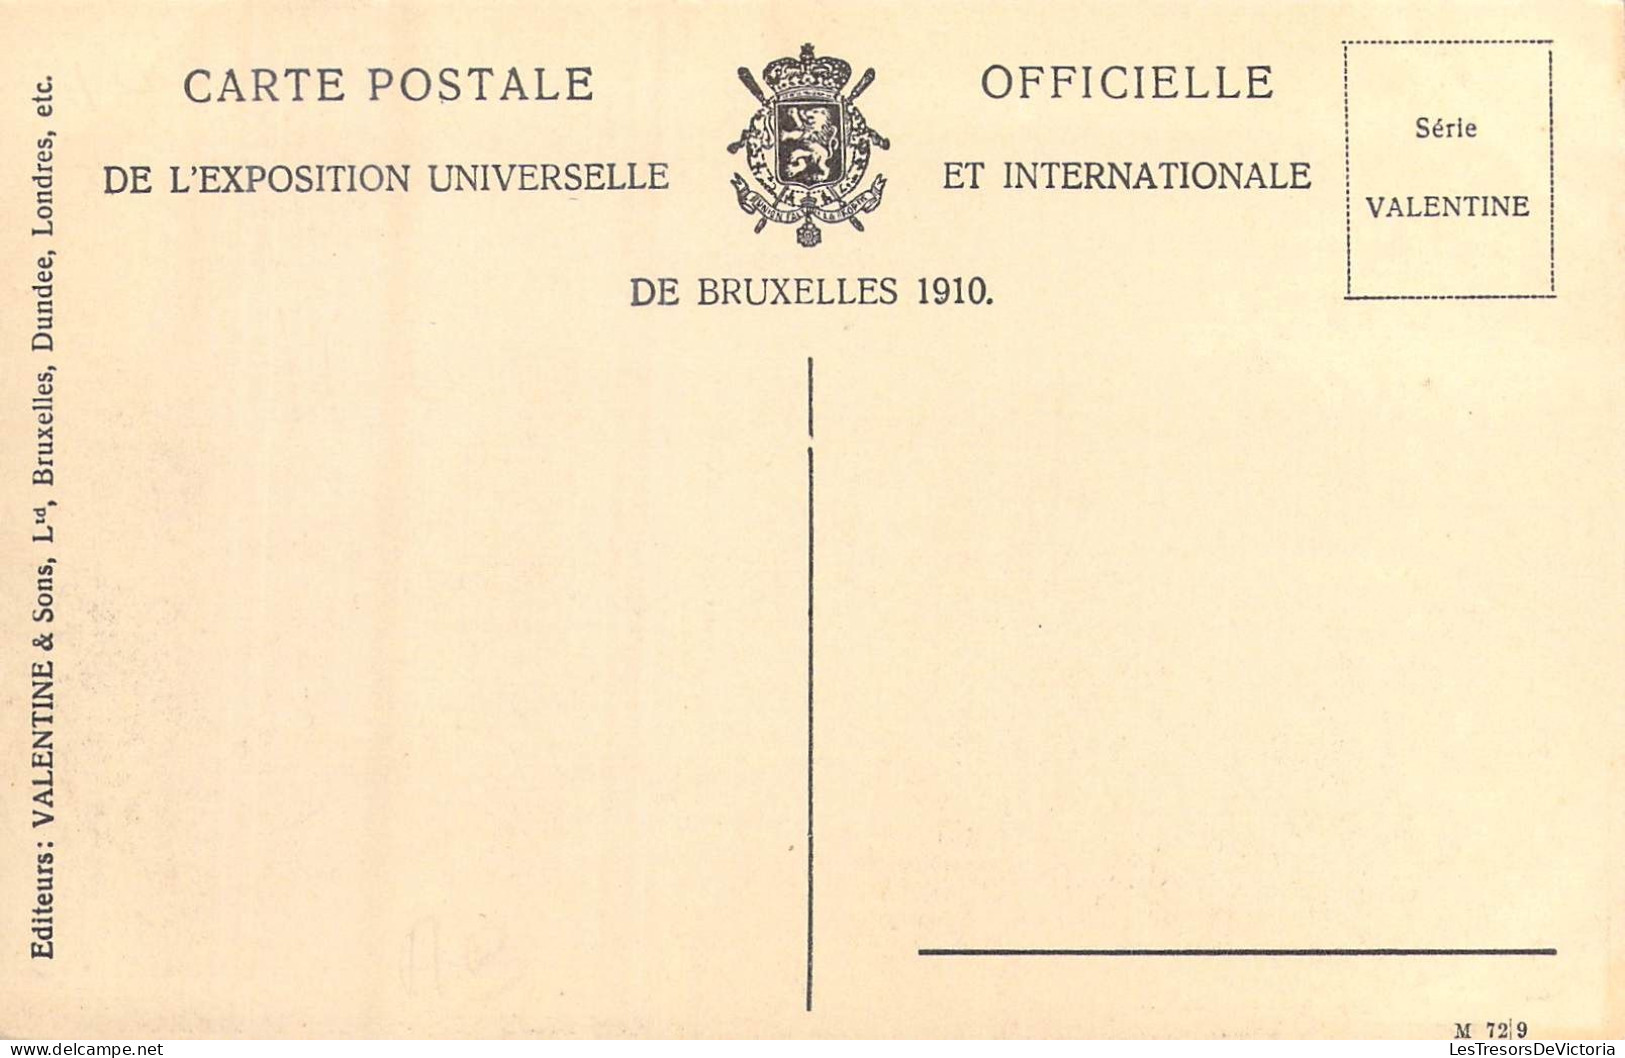 BELGIQUE - Bruxelles - Exposition De Bruxelles 1910 - Pavillon Du Brésil - Carte Postale Ancienne - Universal Exhibitions